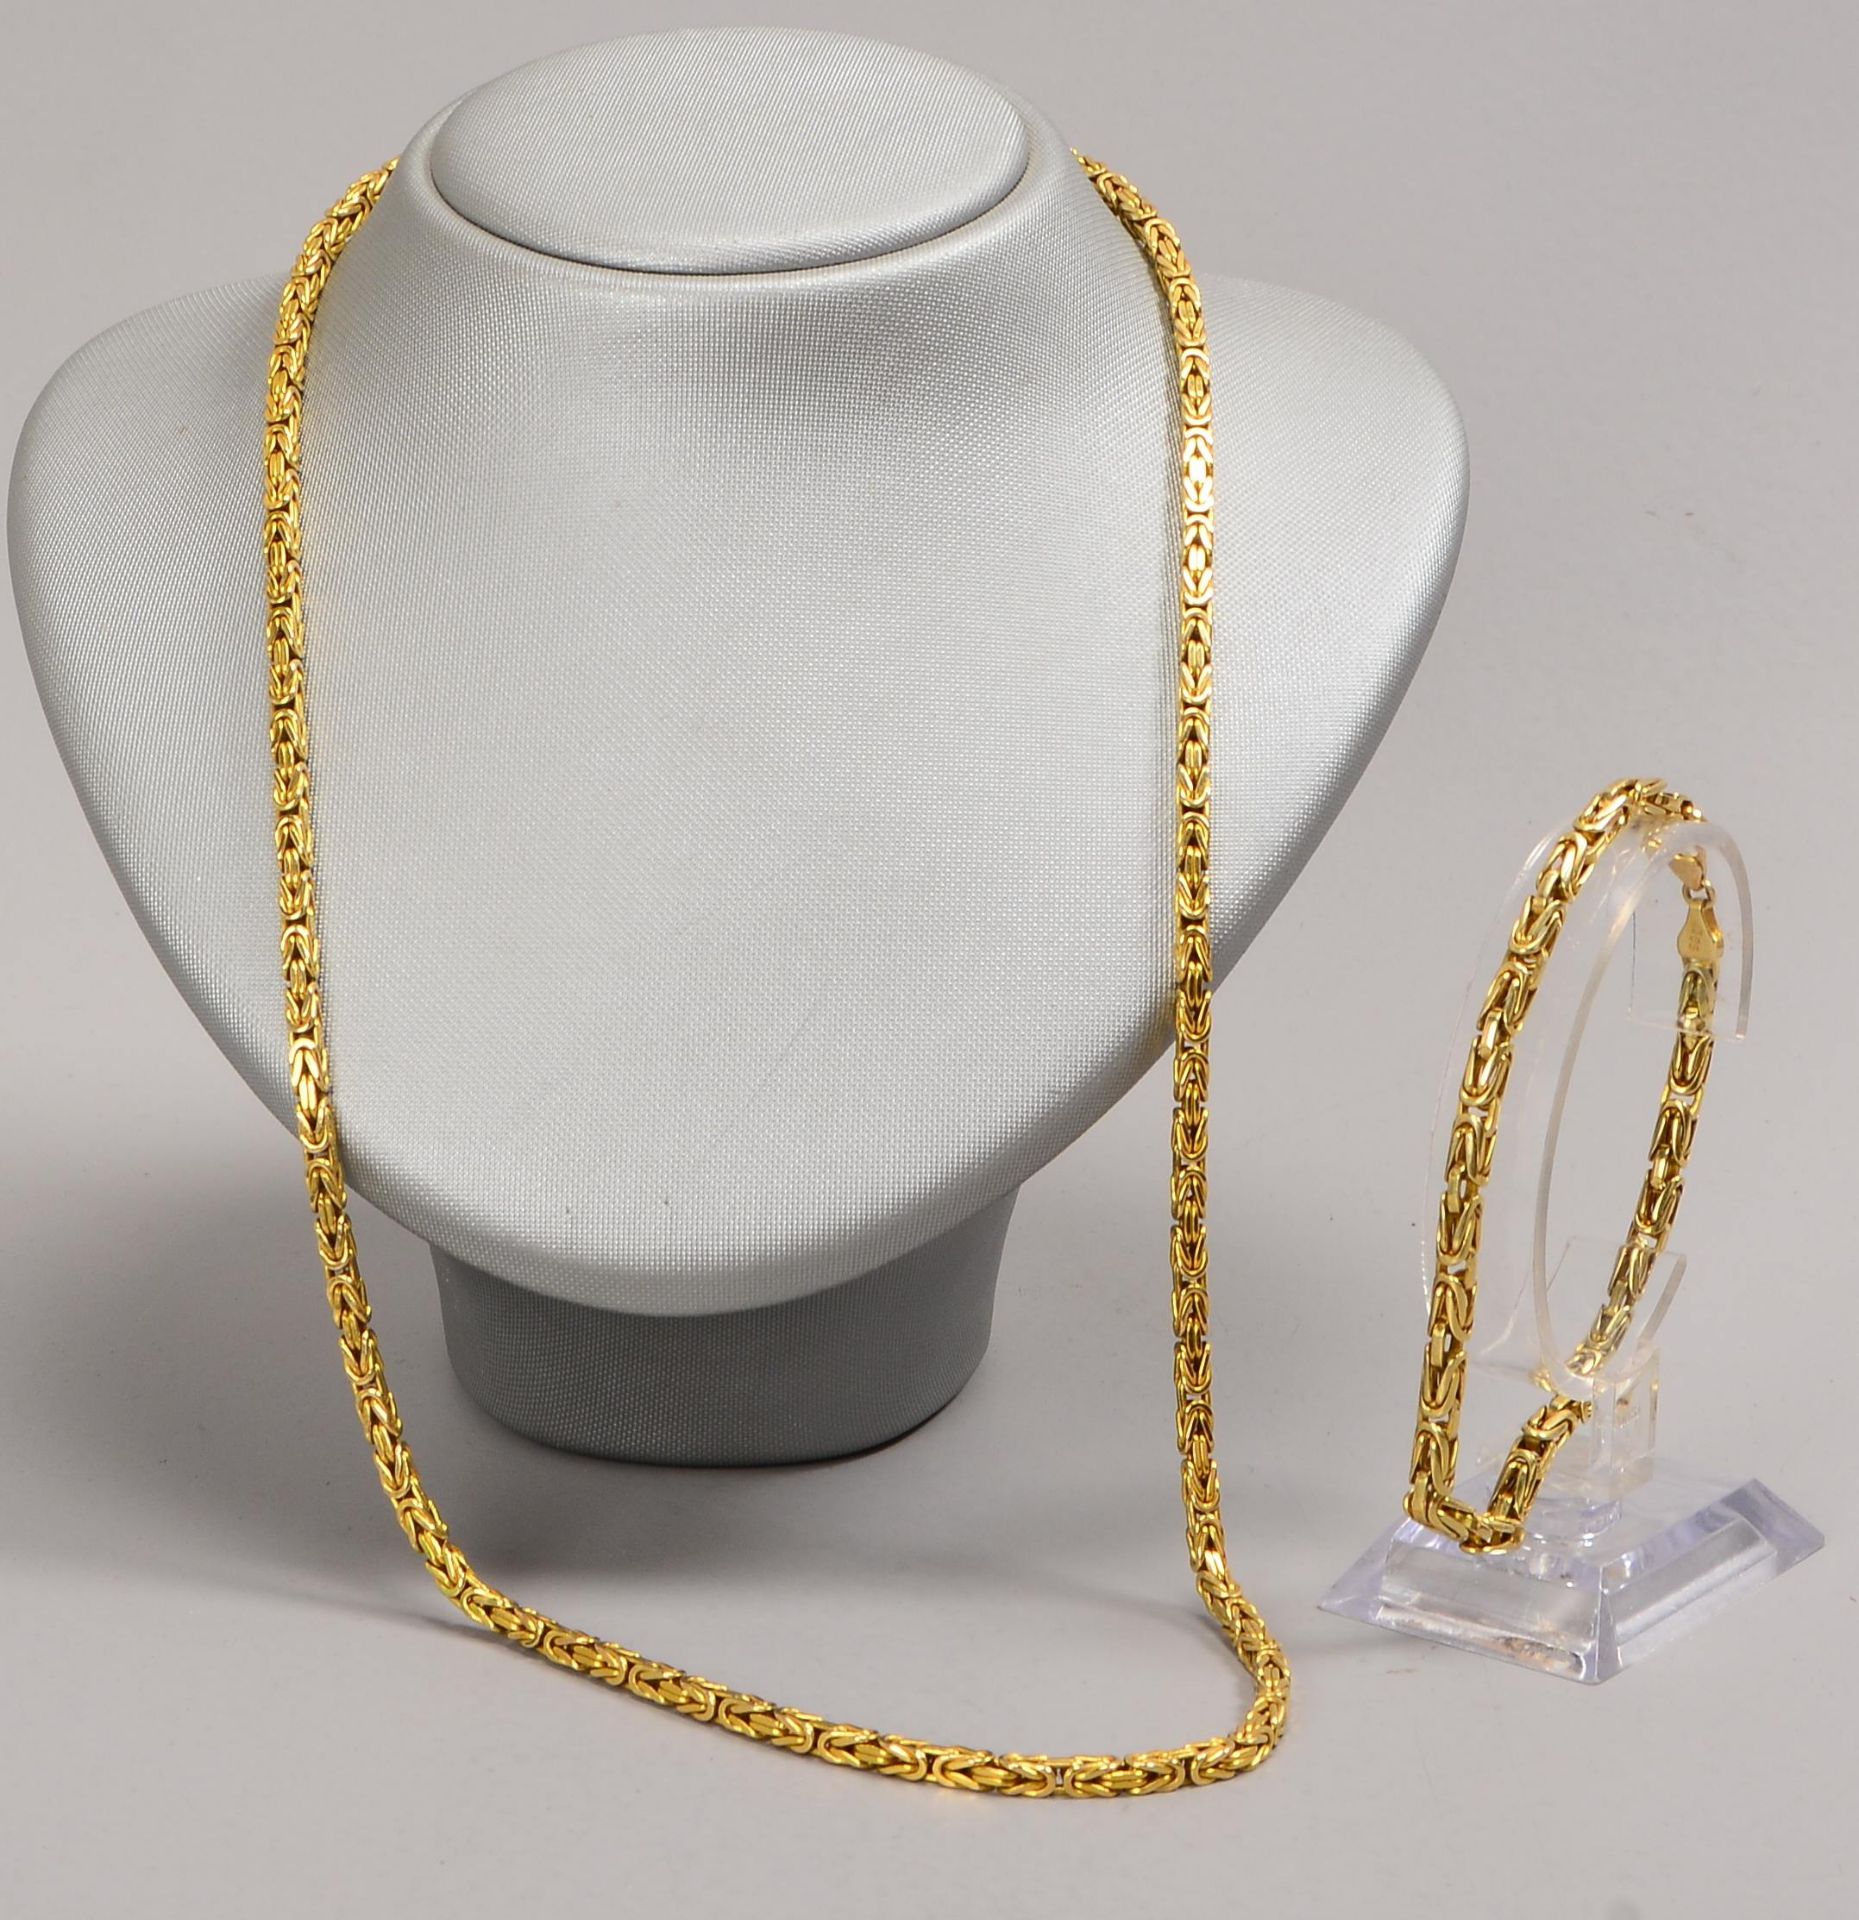 Schmuckset, 585 GG (gestempelt), 2-teilig: Königskette und Armband, Teile jeweils mit Karabinerschli